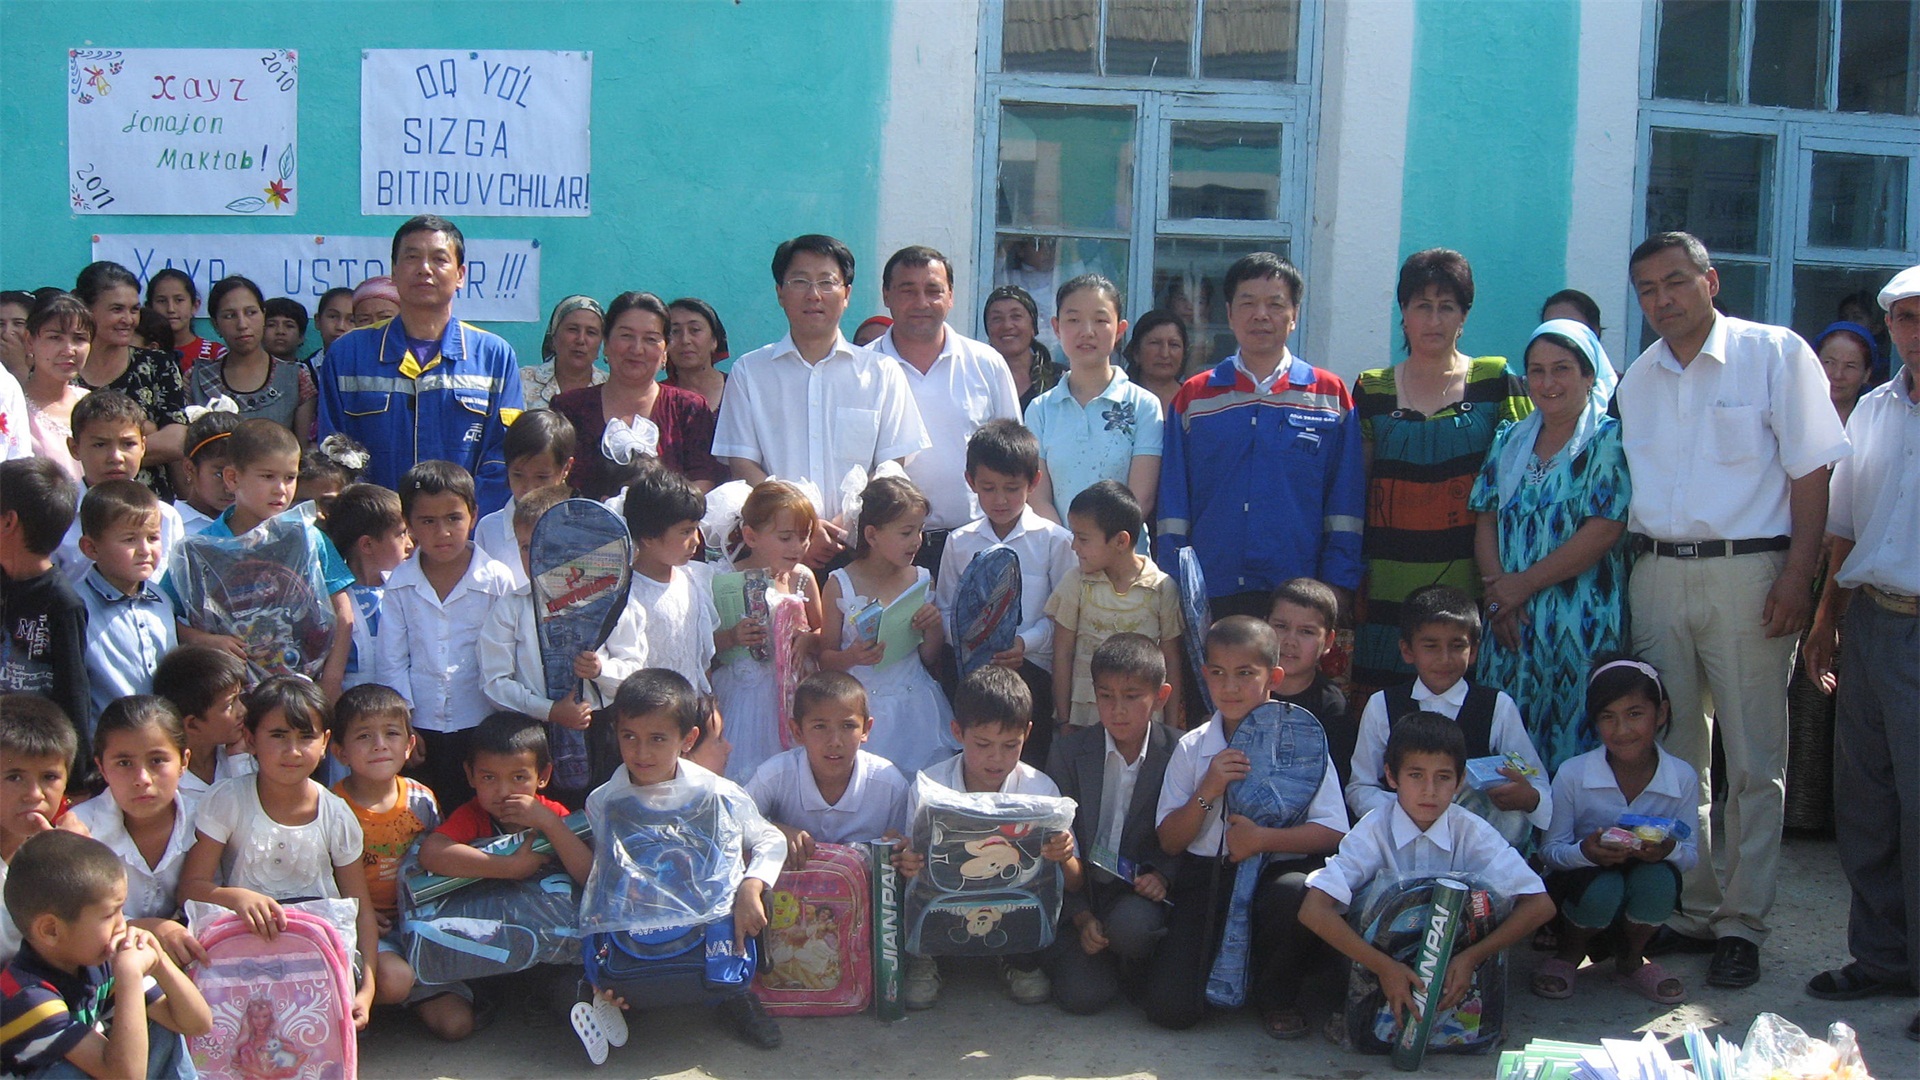  【孩子的笑臉】  烏茲別克斯坦小學生，拿到中國石油叔叔們送的學習用品，興奮寫在他們臉上。               隱藏文字說明